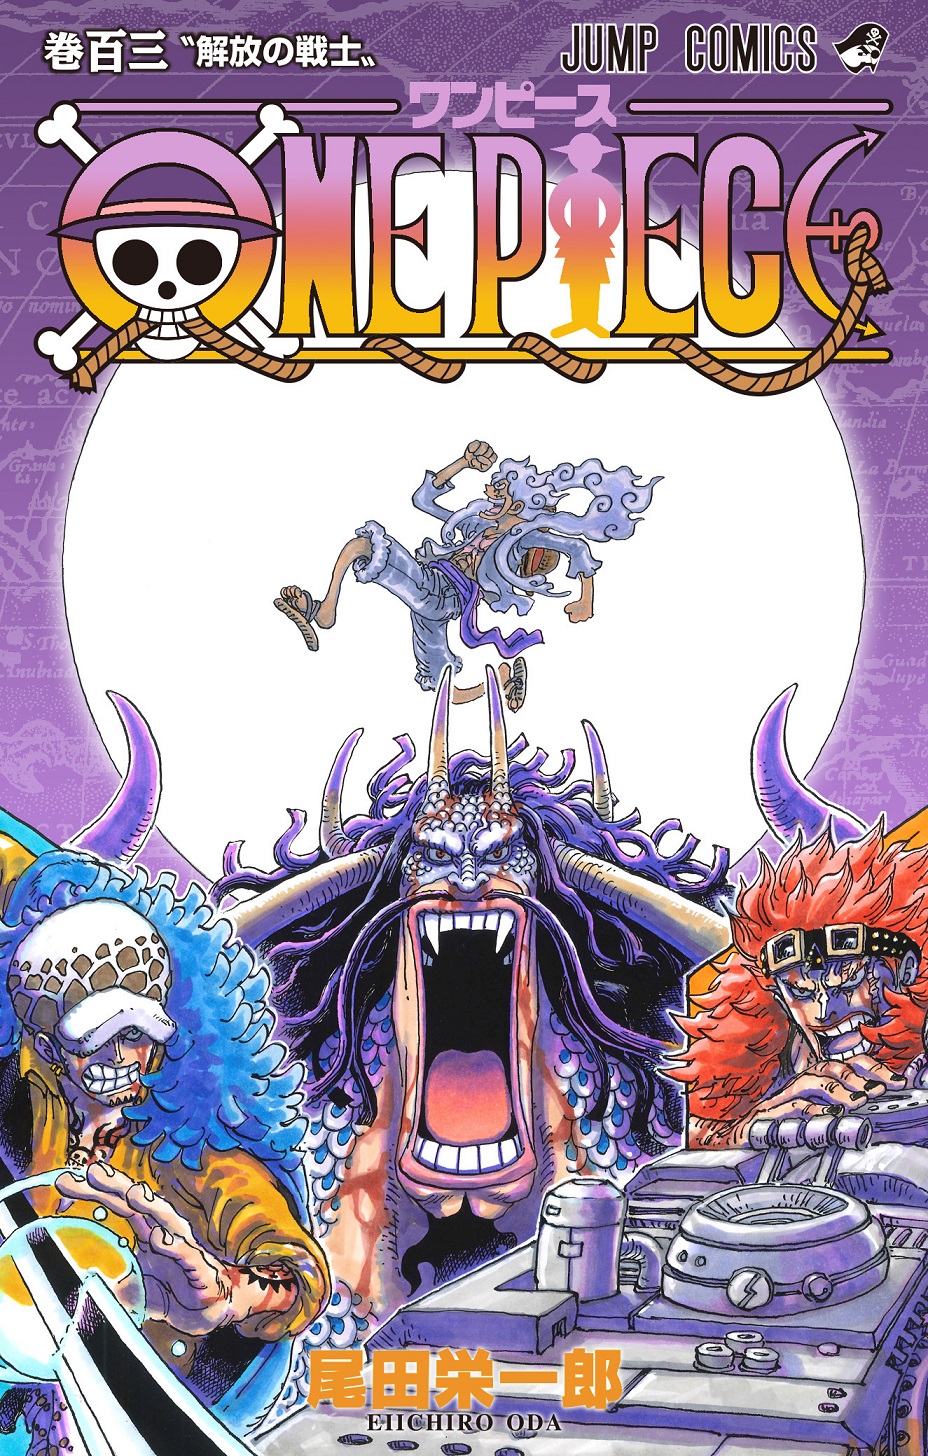 Capa do Volume 103 do mangá de One Piece é revelada